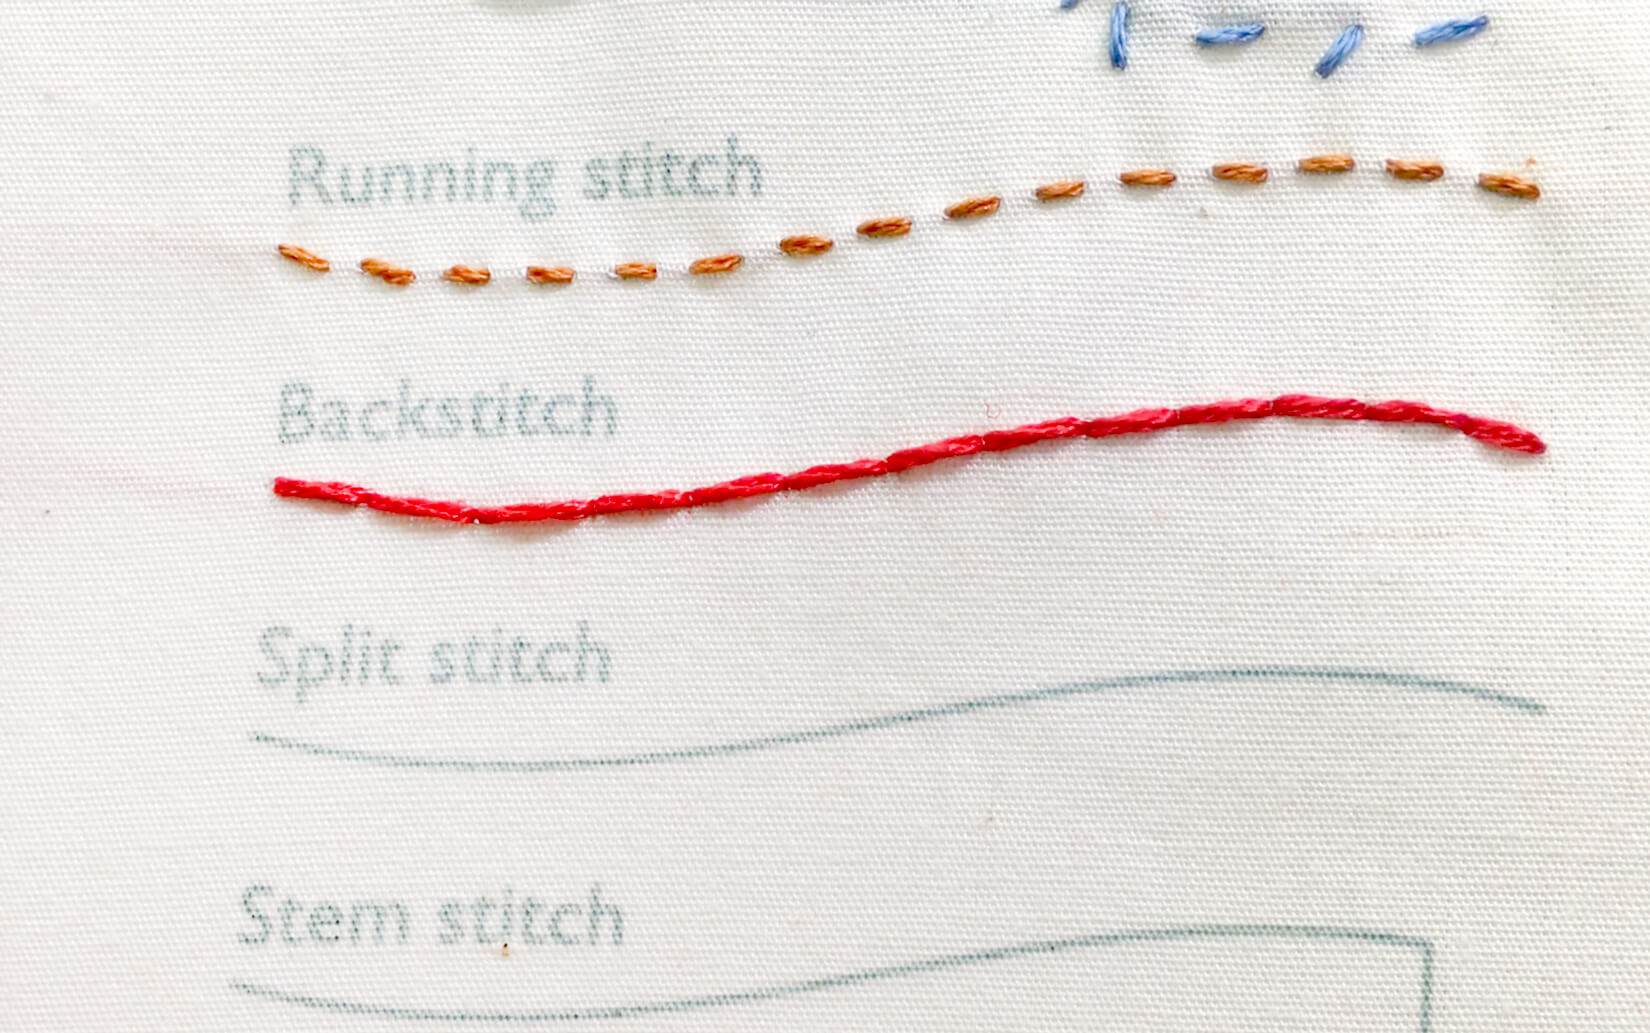 Image of stitching the backstitch